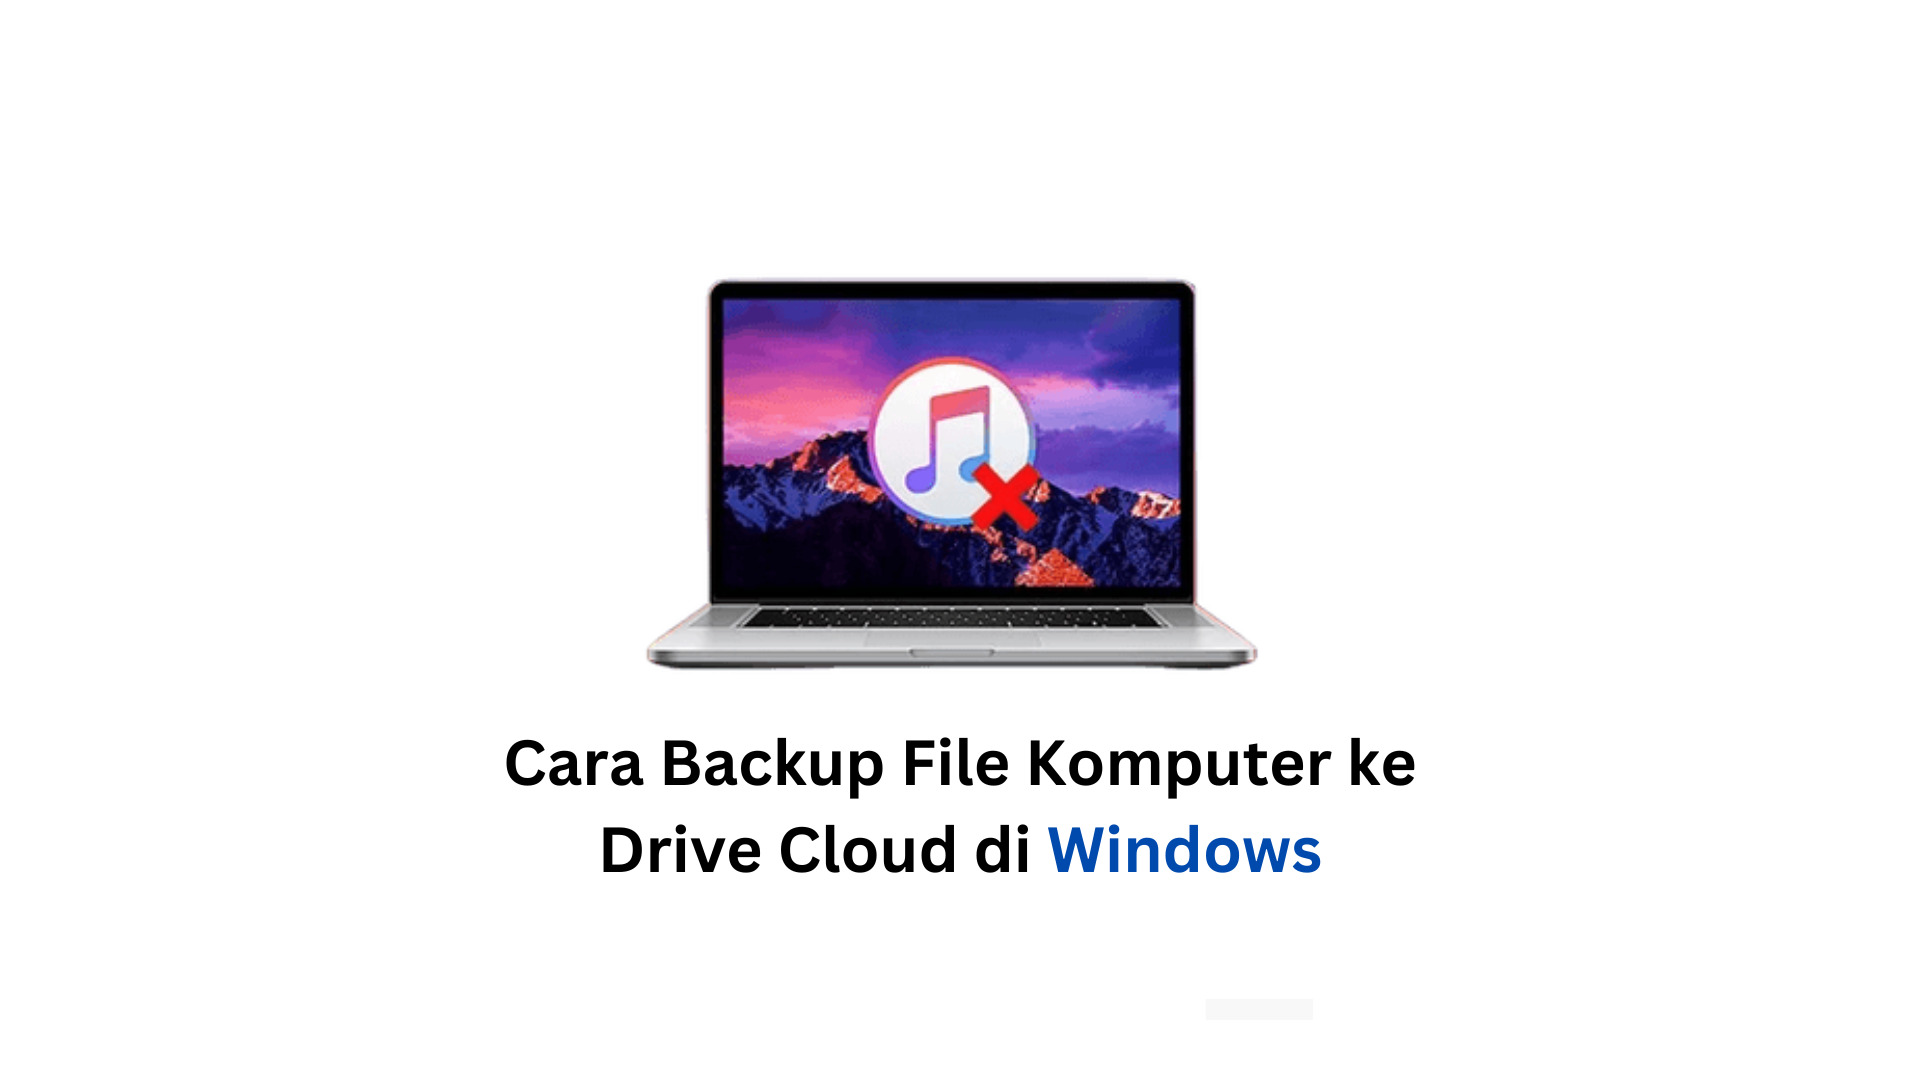 Cara Backup File Komputer ke Drive Cloud di Windows